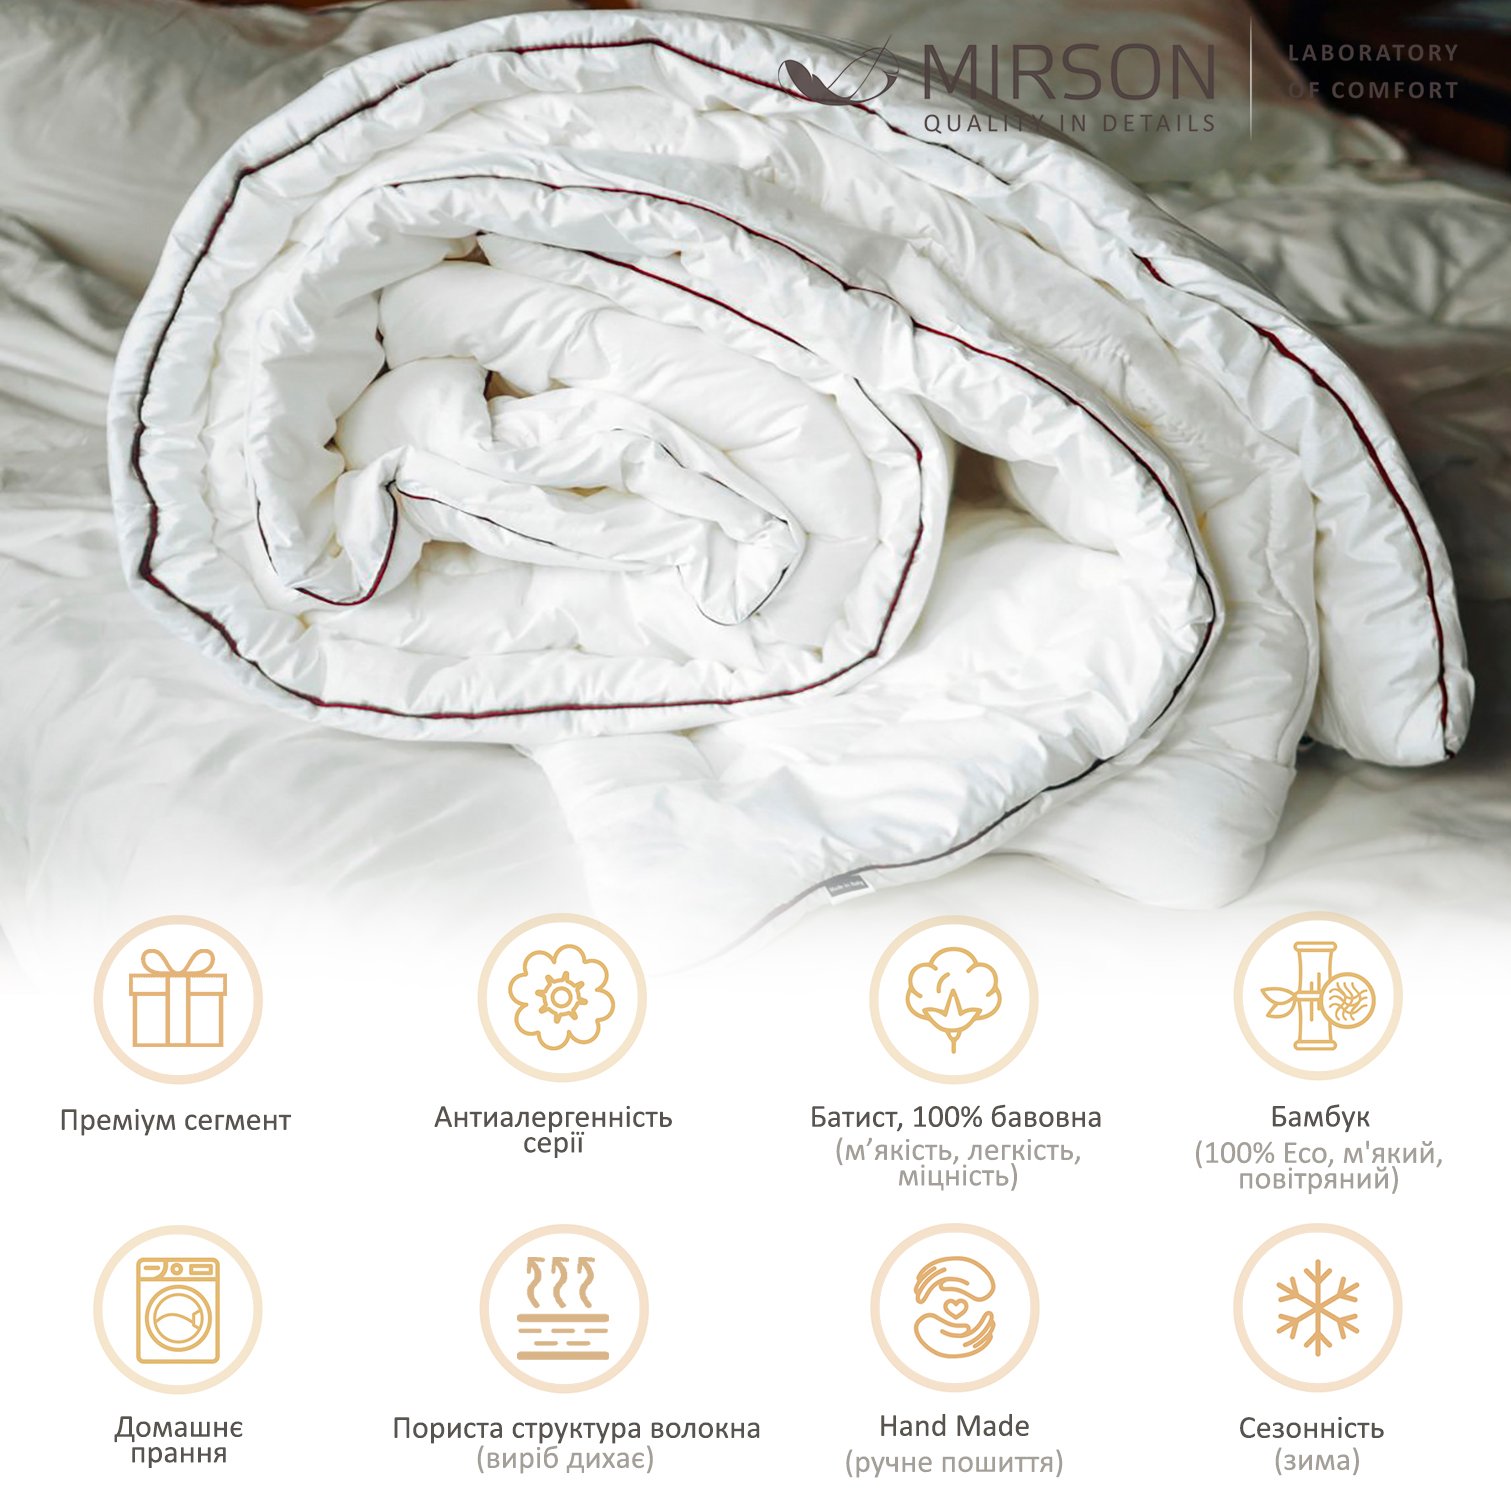 Одеяло бамбуковое MirSon Deluxe Hand Made №0446, зимнее, 200x220 см, белое - фото 5